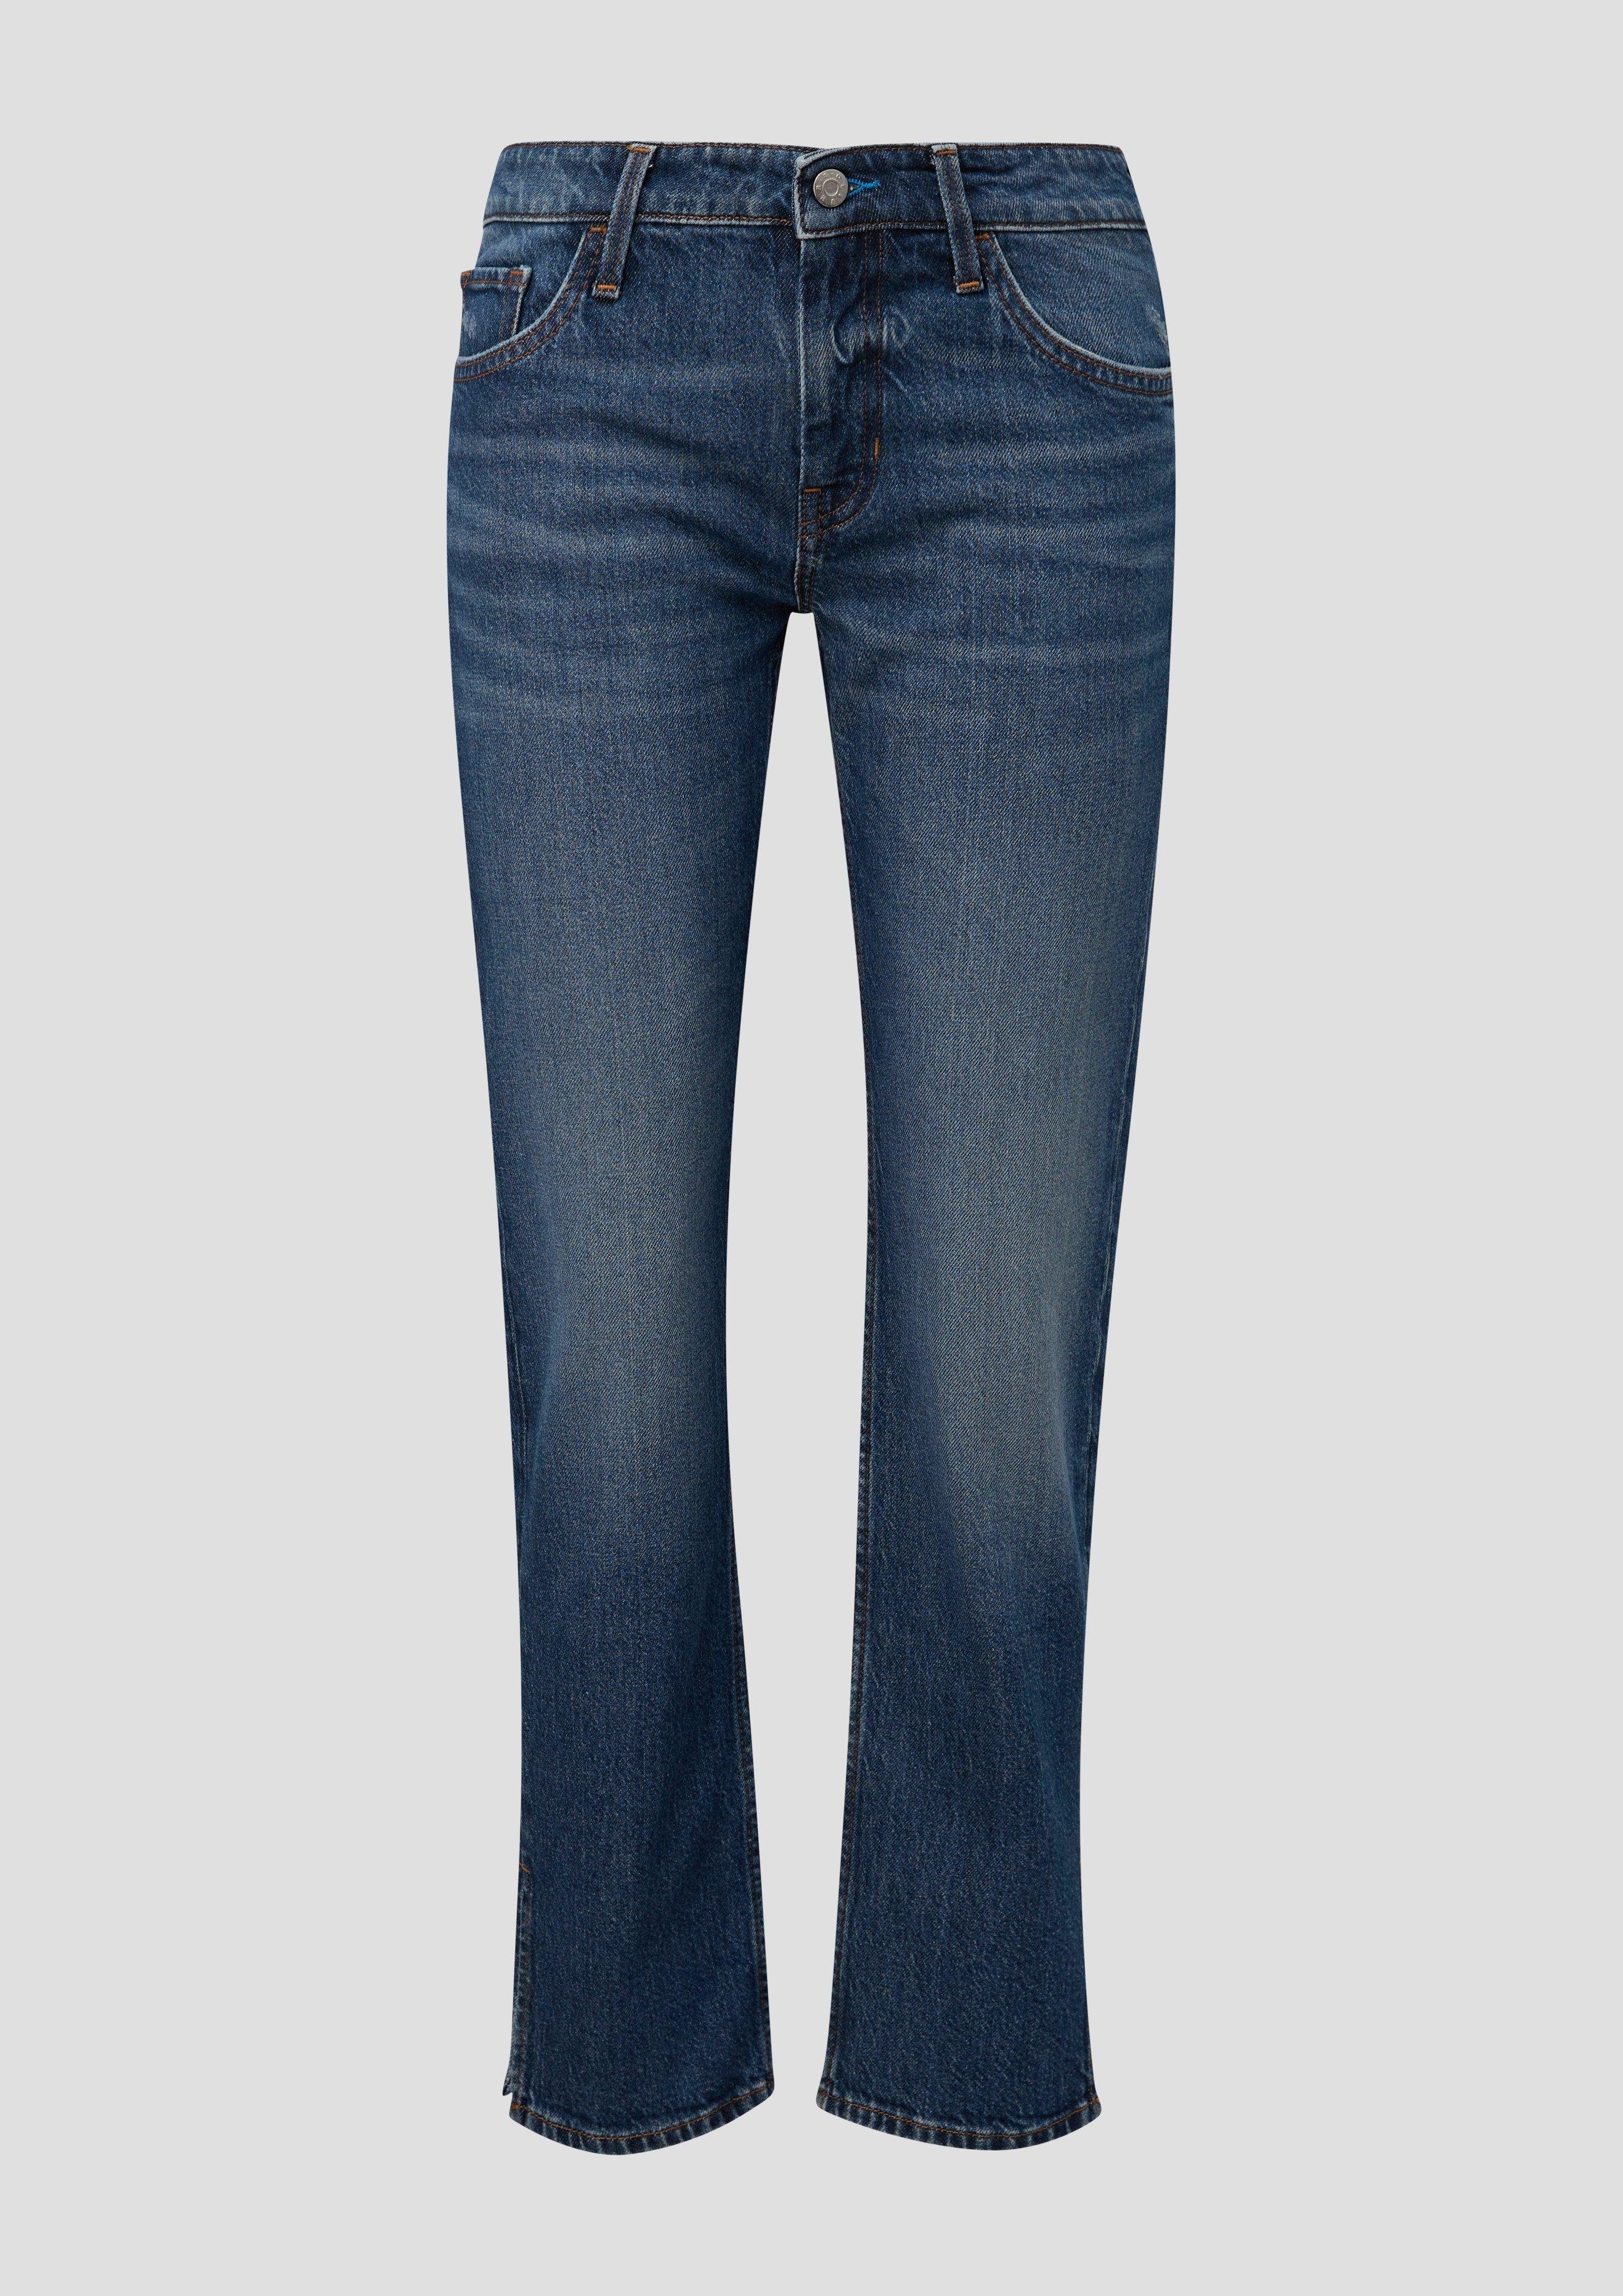 Low Karolin / Leg Regular Rise Label-Patch 5-Pocket-Jeans / Jeans Fit Straight / s.Oliver